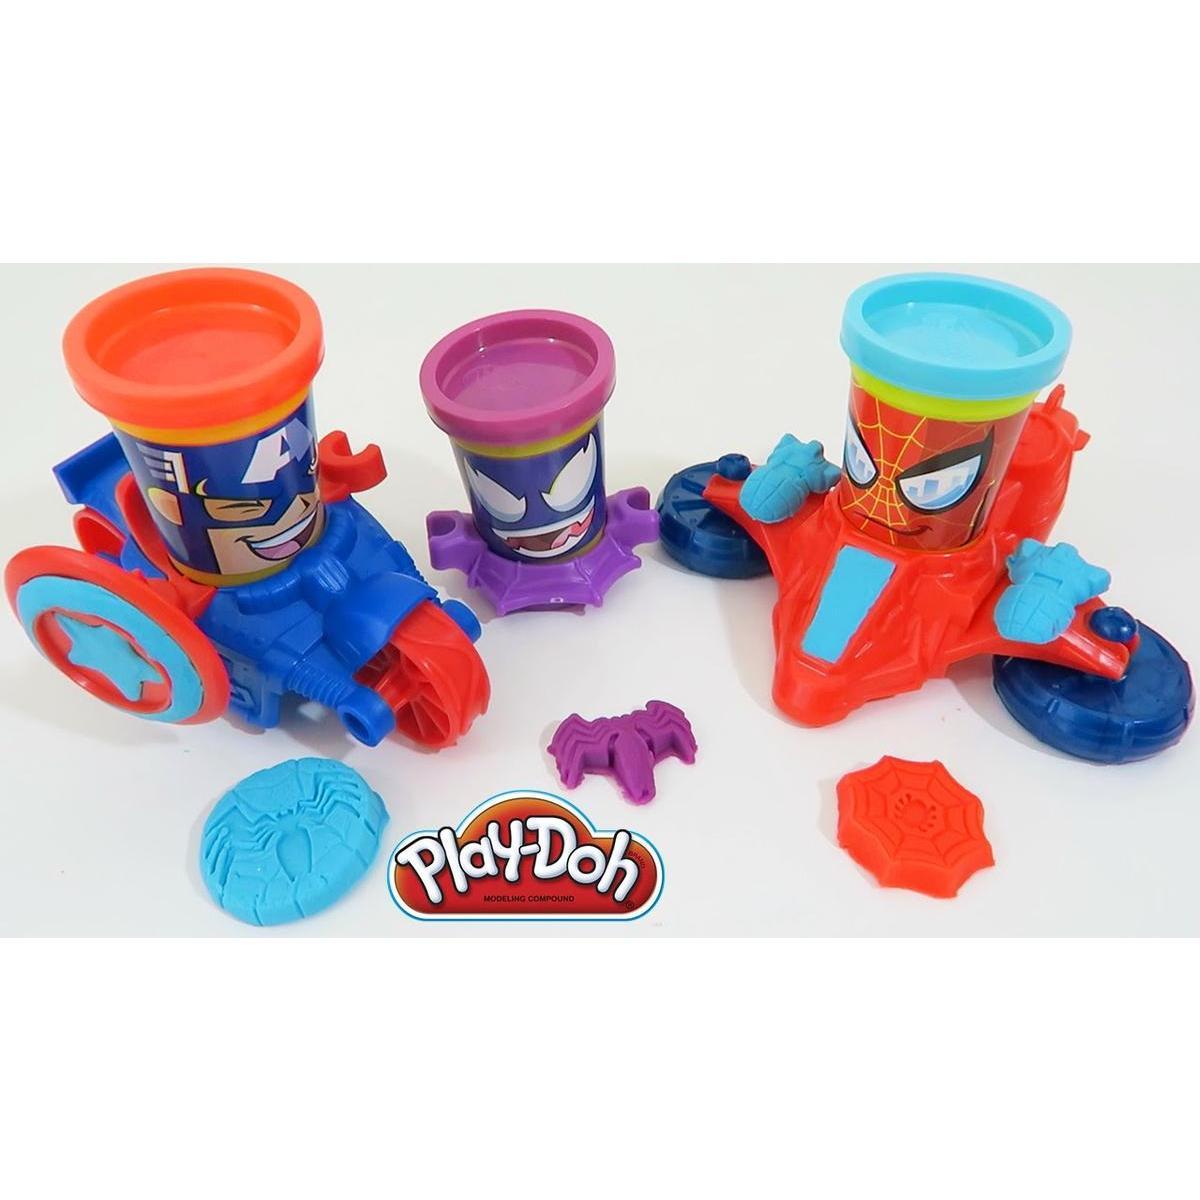 Véhicule Marvel Playdoh - Plastique et pâte à modeler - 20 x 23 x H 7 cm - Multicolore